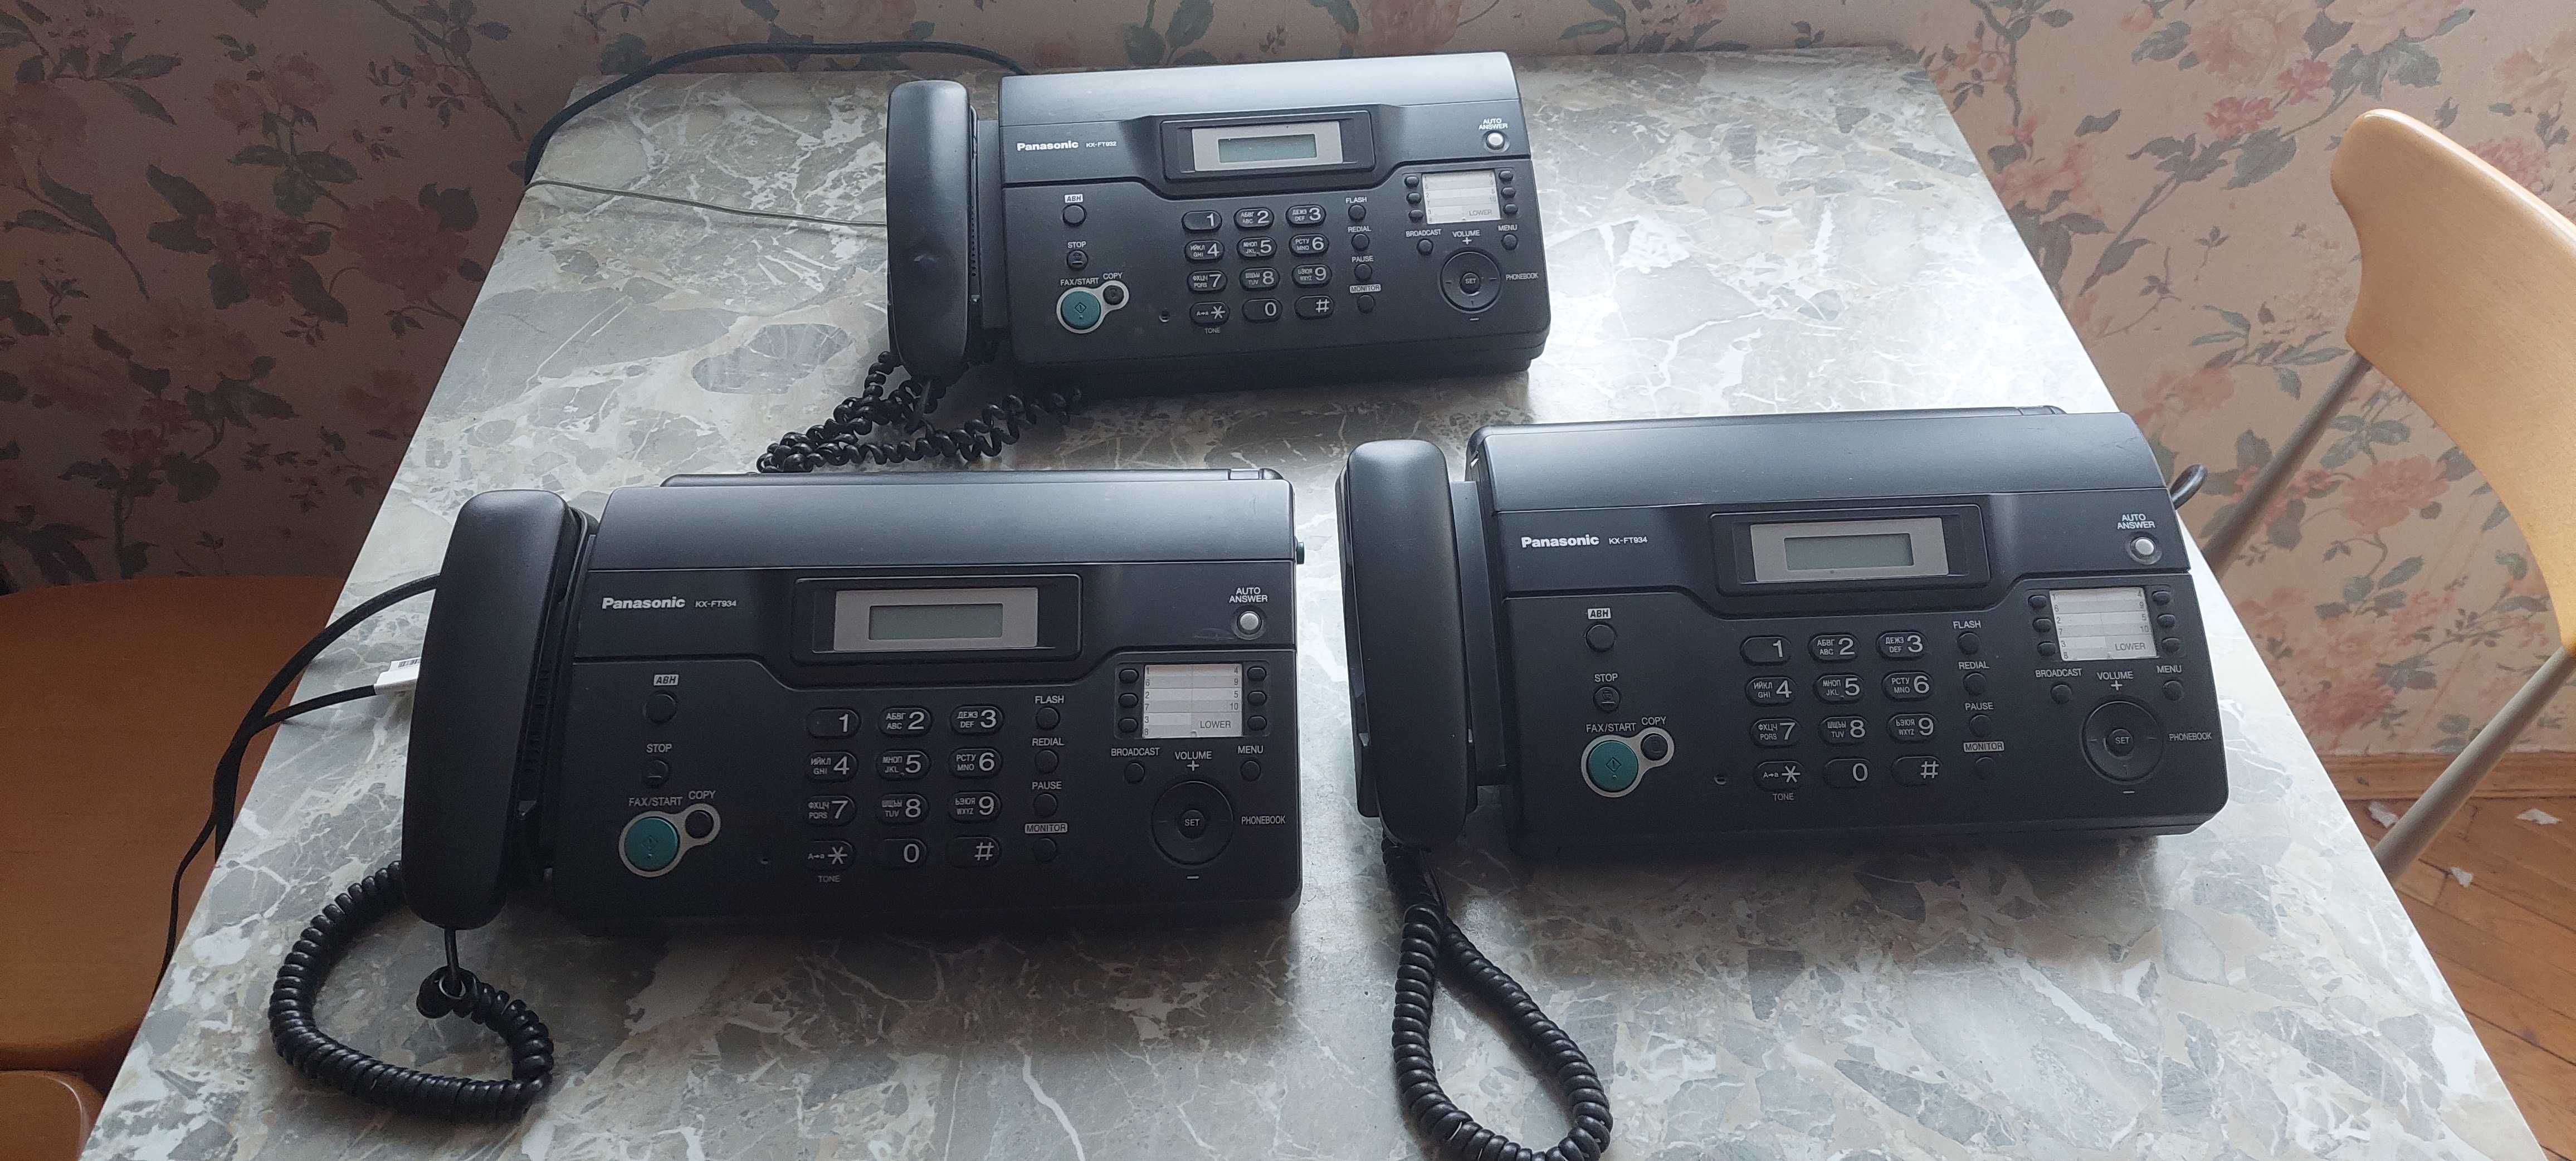 Телефон-Факс Panasonic KX-FT 934 и KX-FT 932